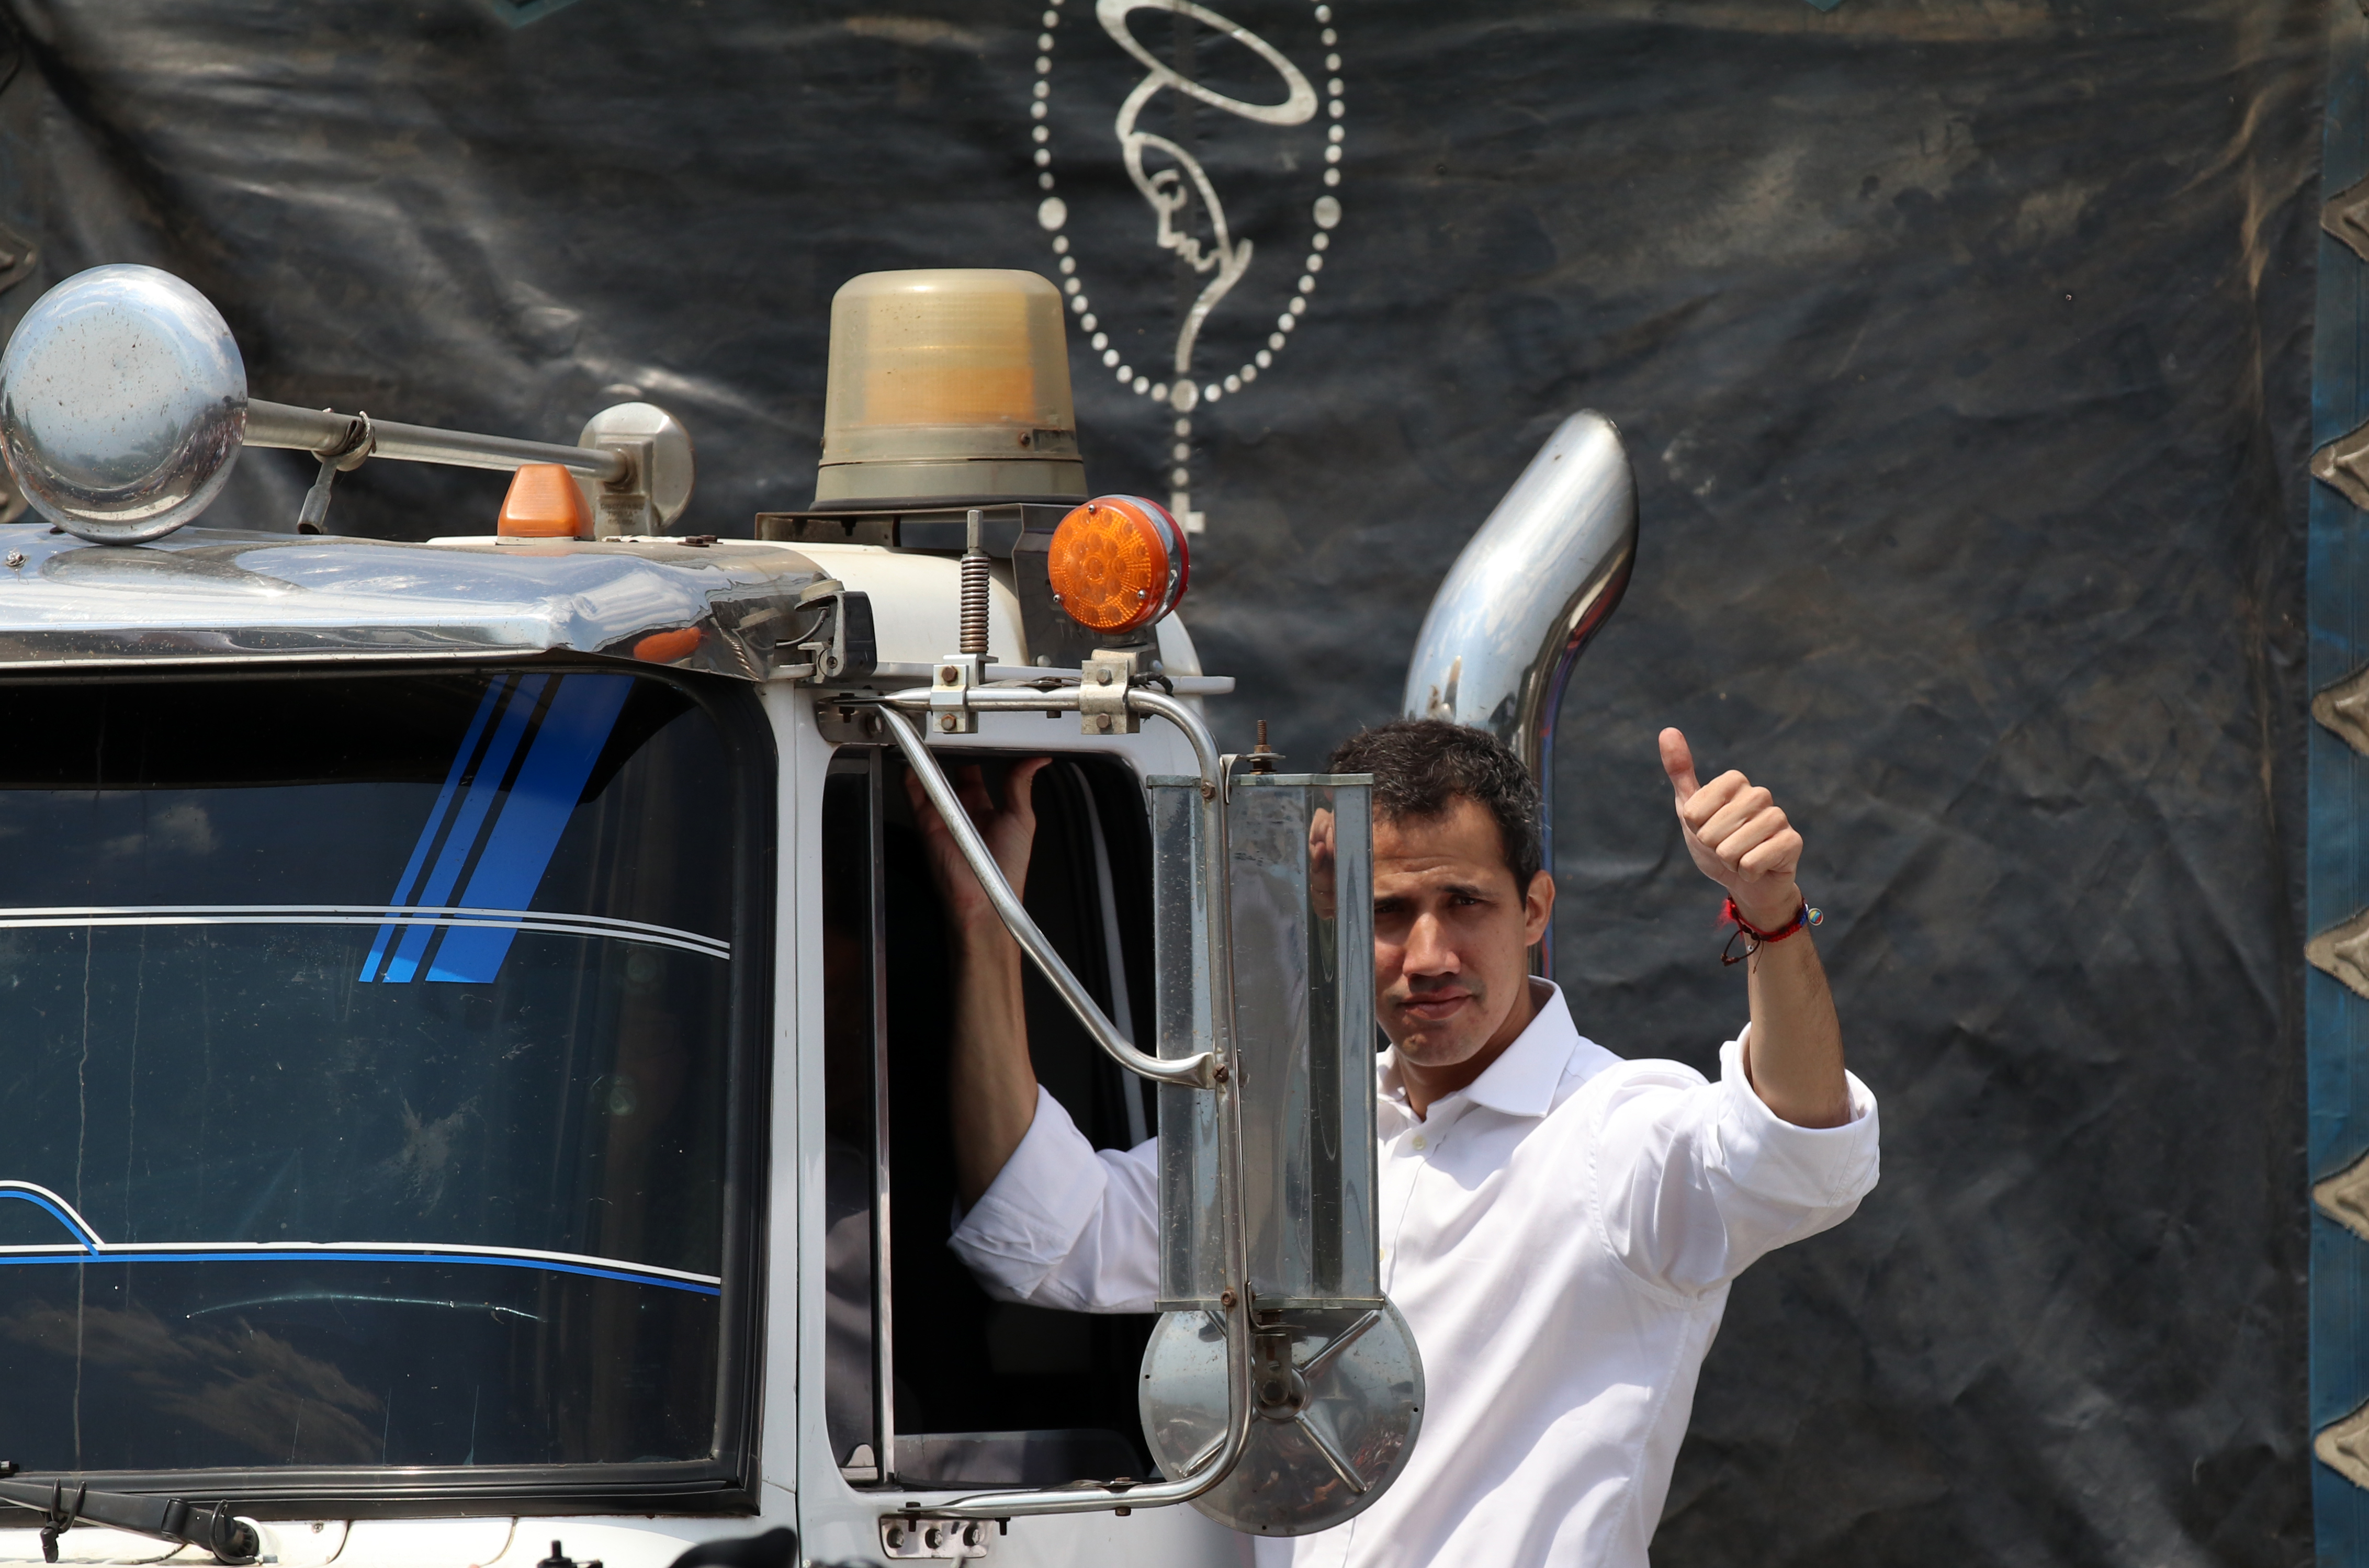 El autoproclamado presidente interino de Venezuela, Juan Guaidó, en la ciudad colombiana de Cúcuta, donde recibió 14 tractomulas con ayuda humanitaria del presidente de Colombia Iván Duque. (Lokman İlhan - Agencia Anadolu)